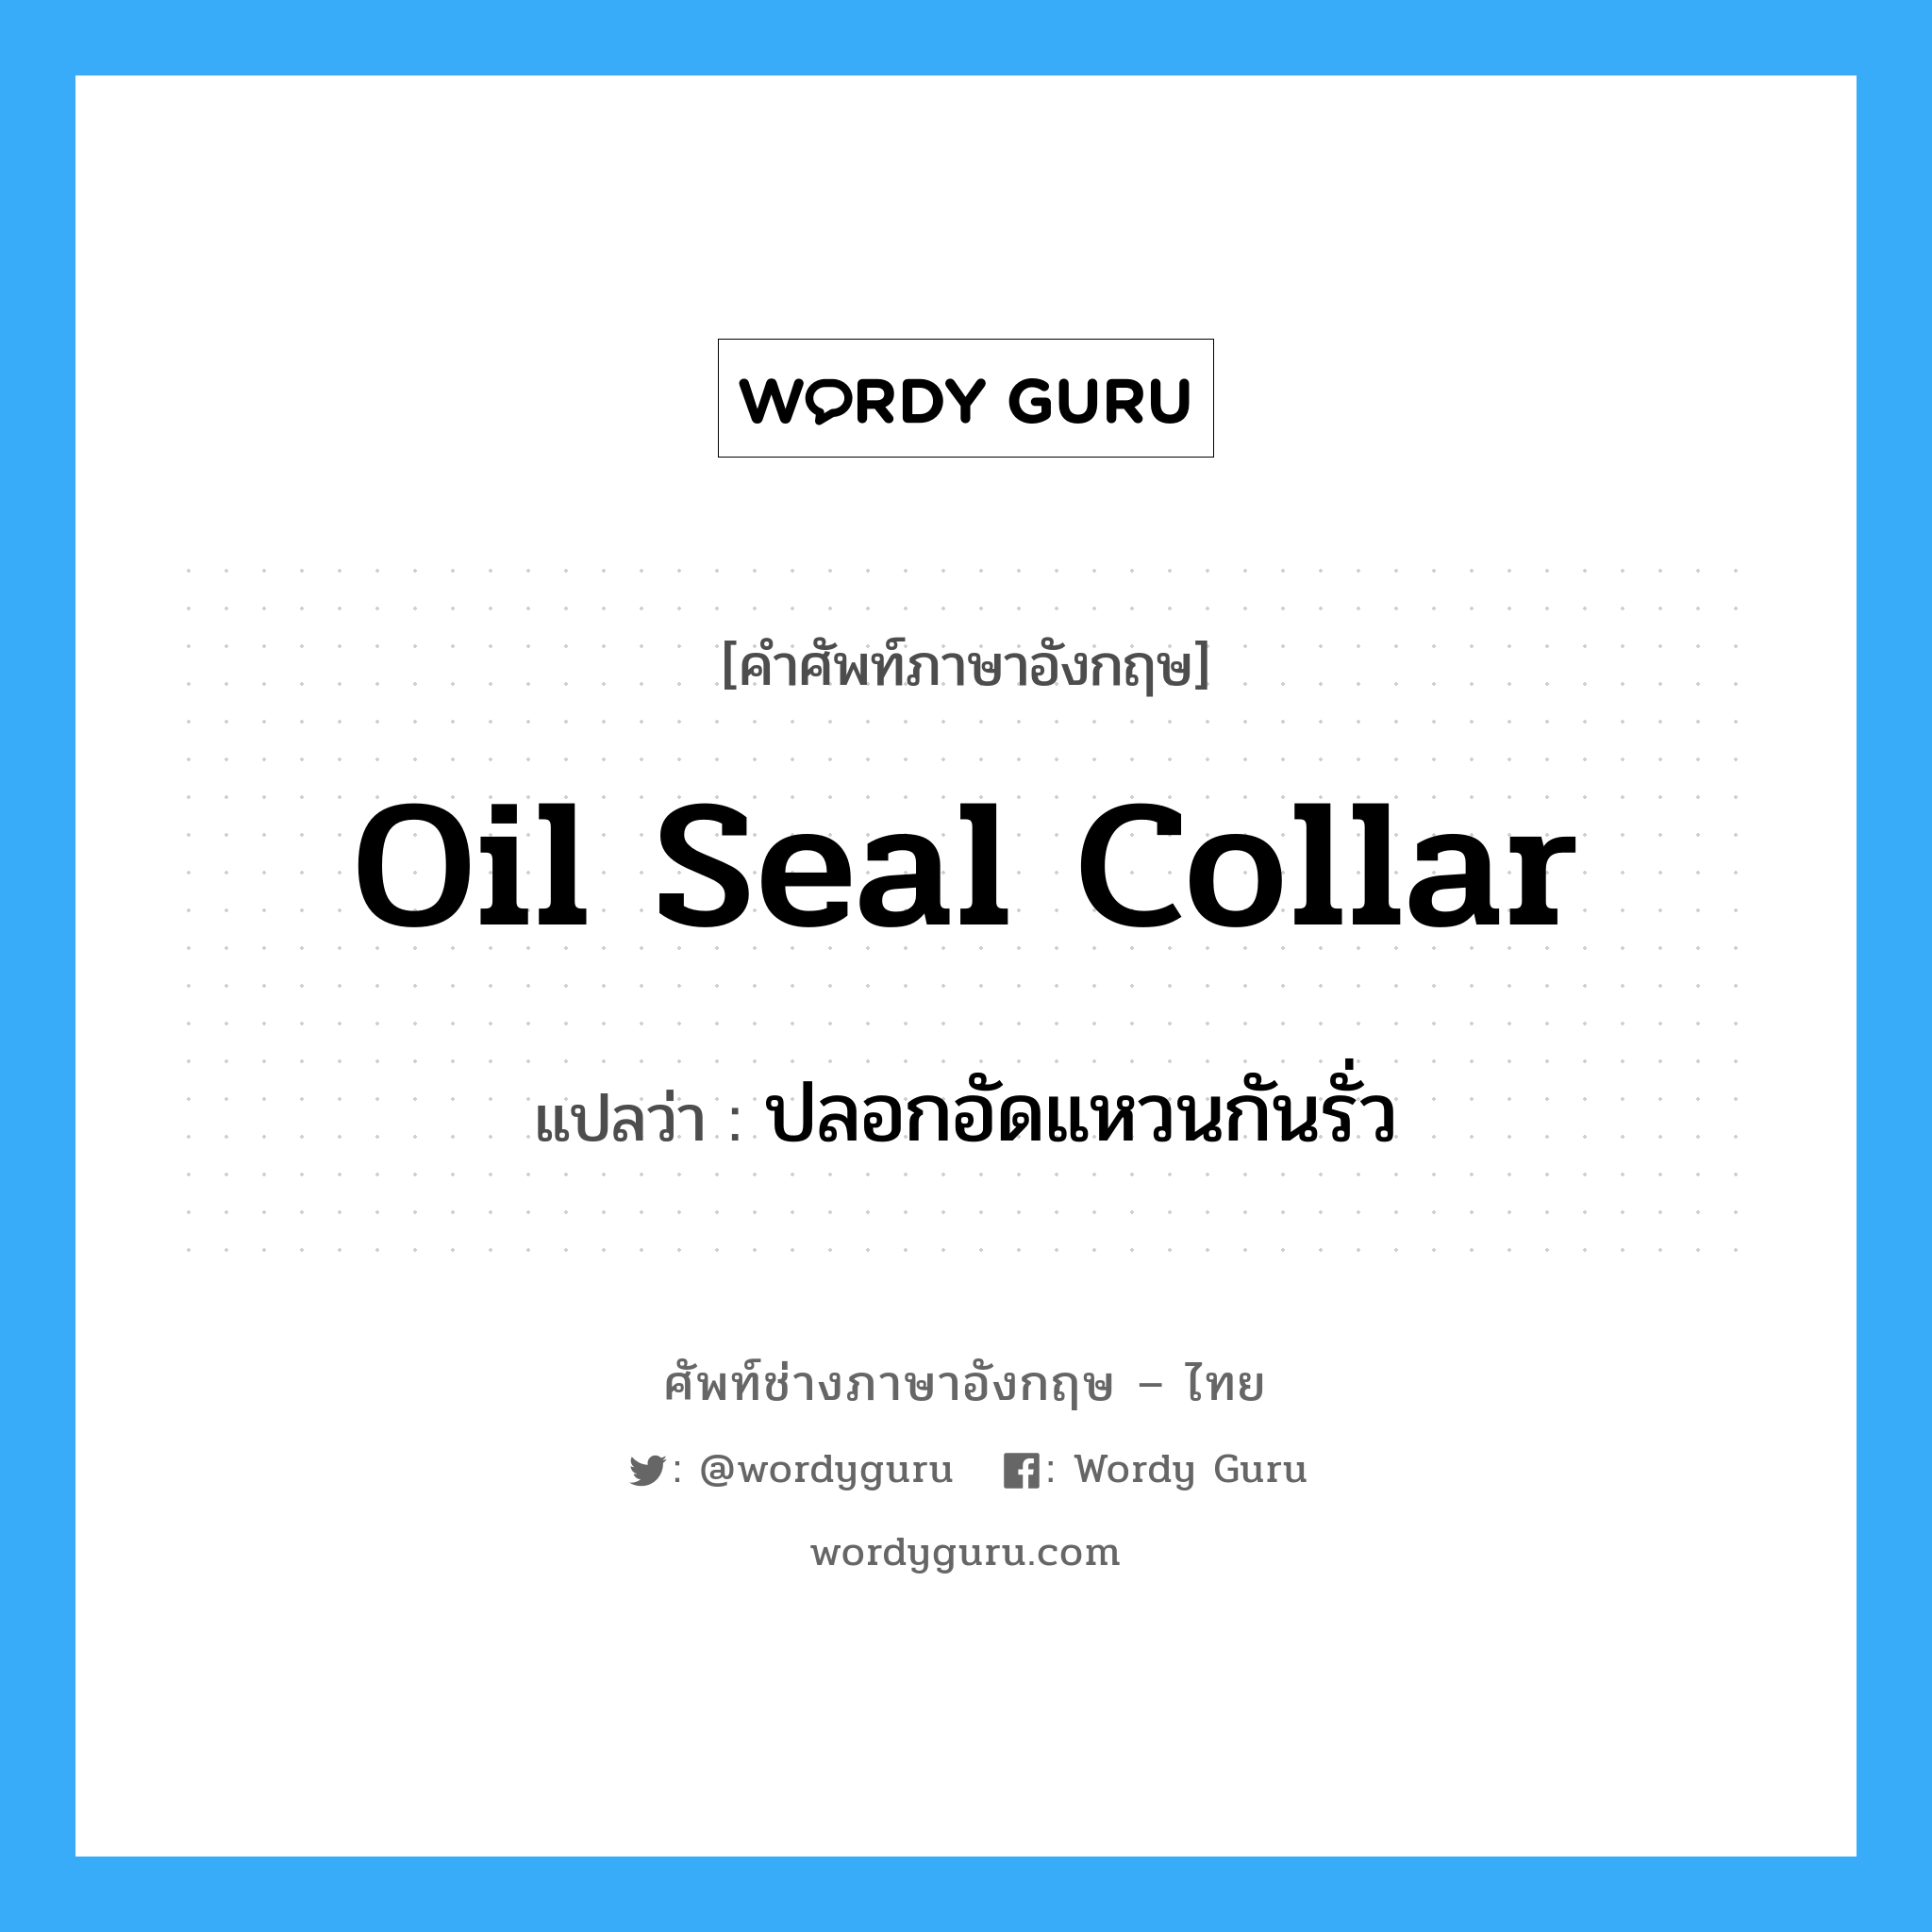 ปลอกอัดแหวนกันรั่ว ภาษาอังกฤษ?, คำศัพท์ช่างภาษาอังกฤษ - ไทย ปลอกอัดแหวนกันรั่ว คำศัพท์ภาษาอังกฤษ ปลอกอัดแหวนกันรั่ว แปลว่า oil seal collar